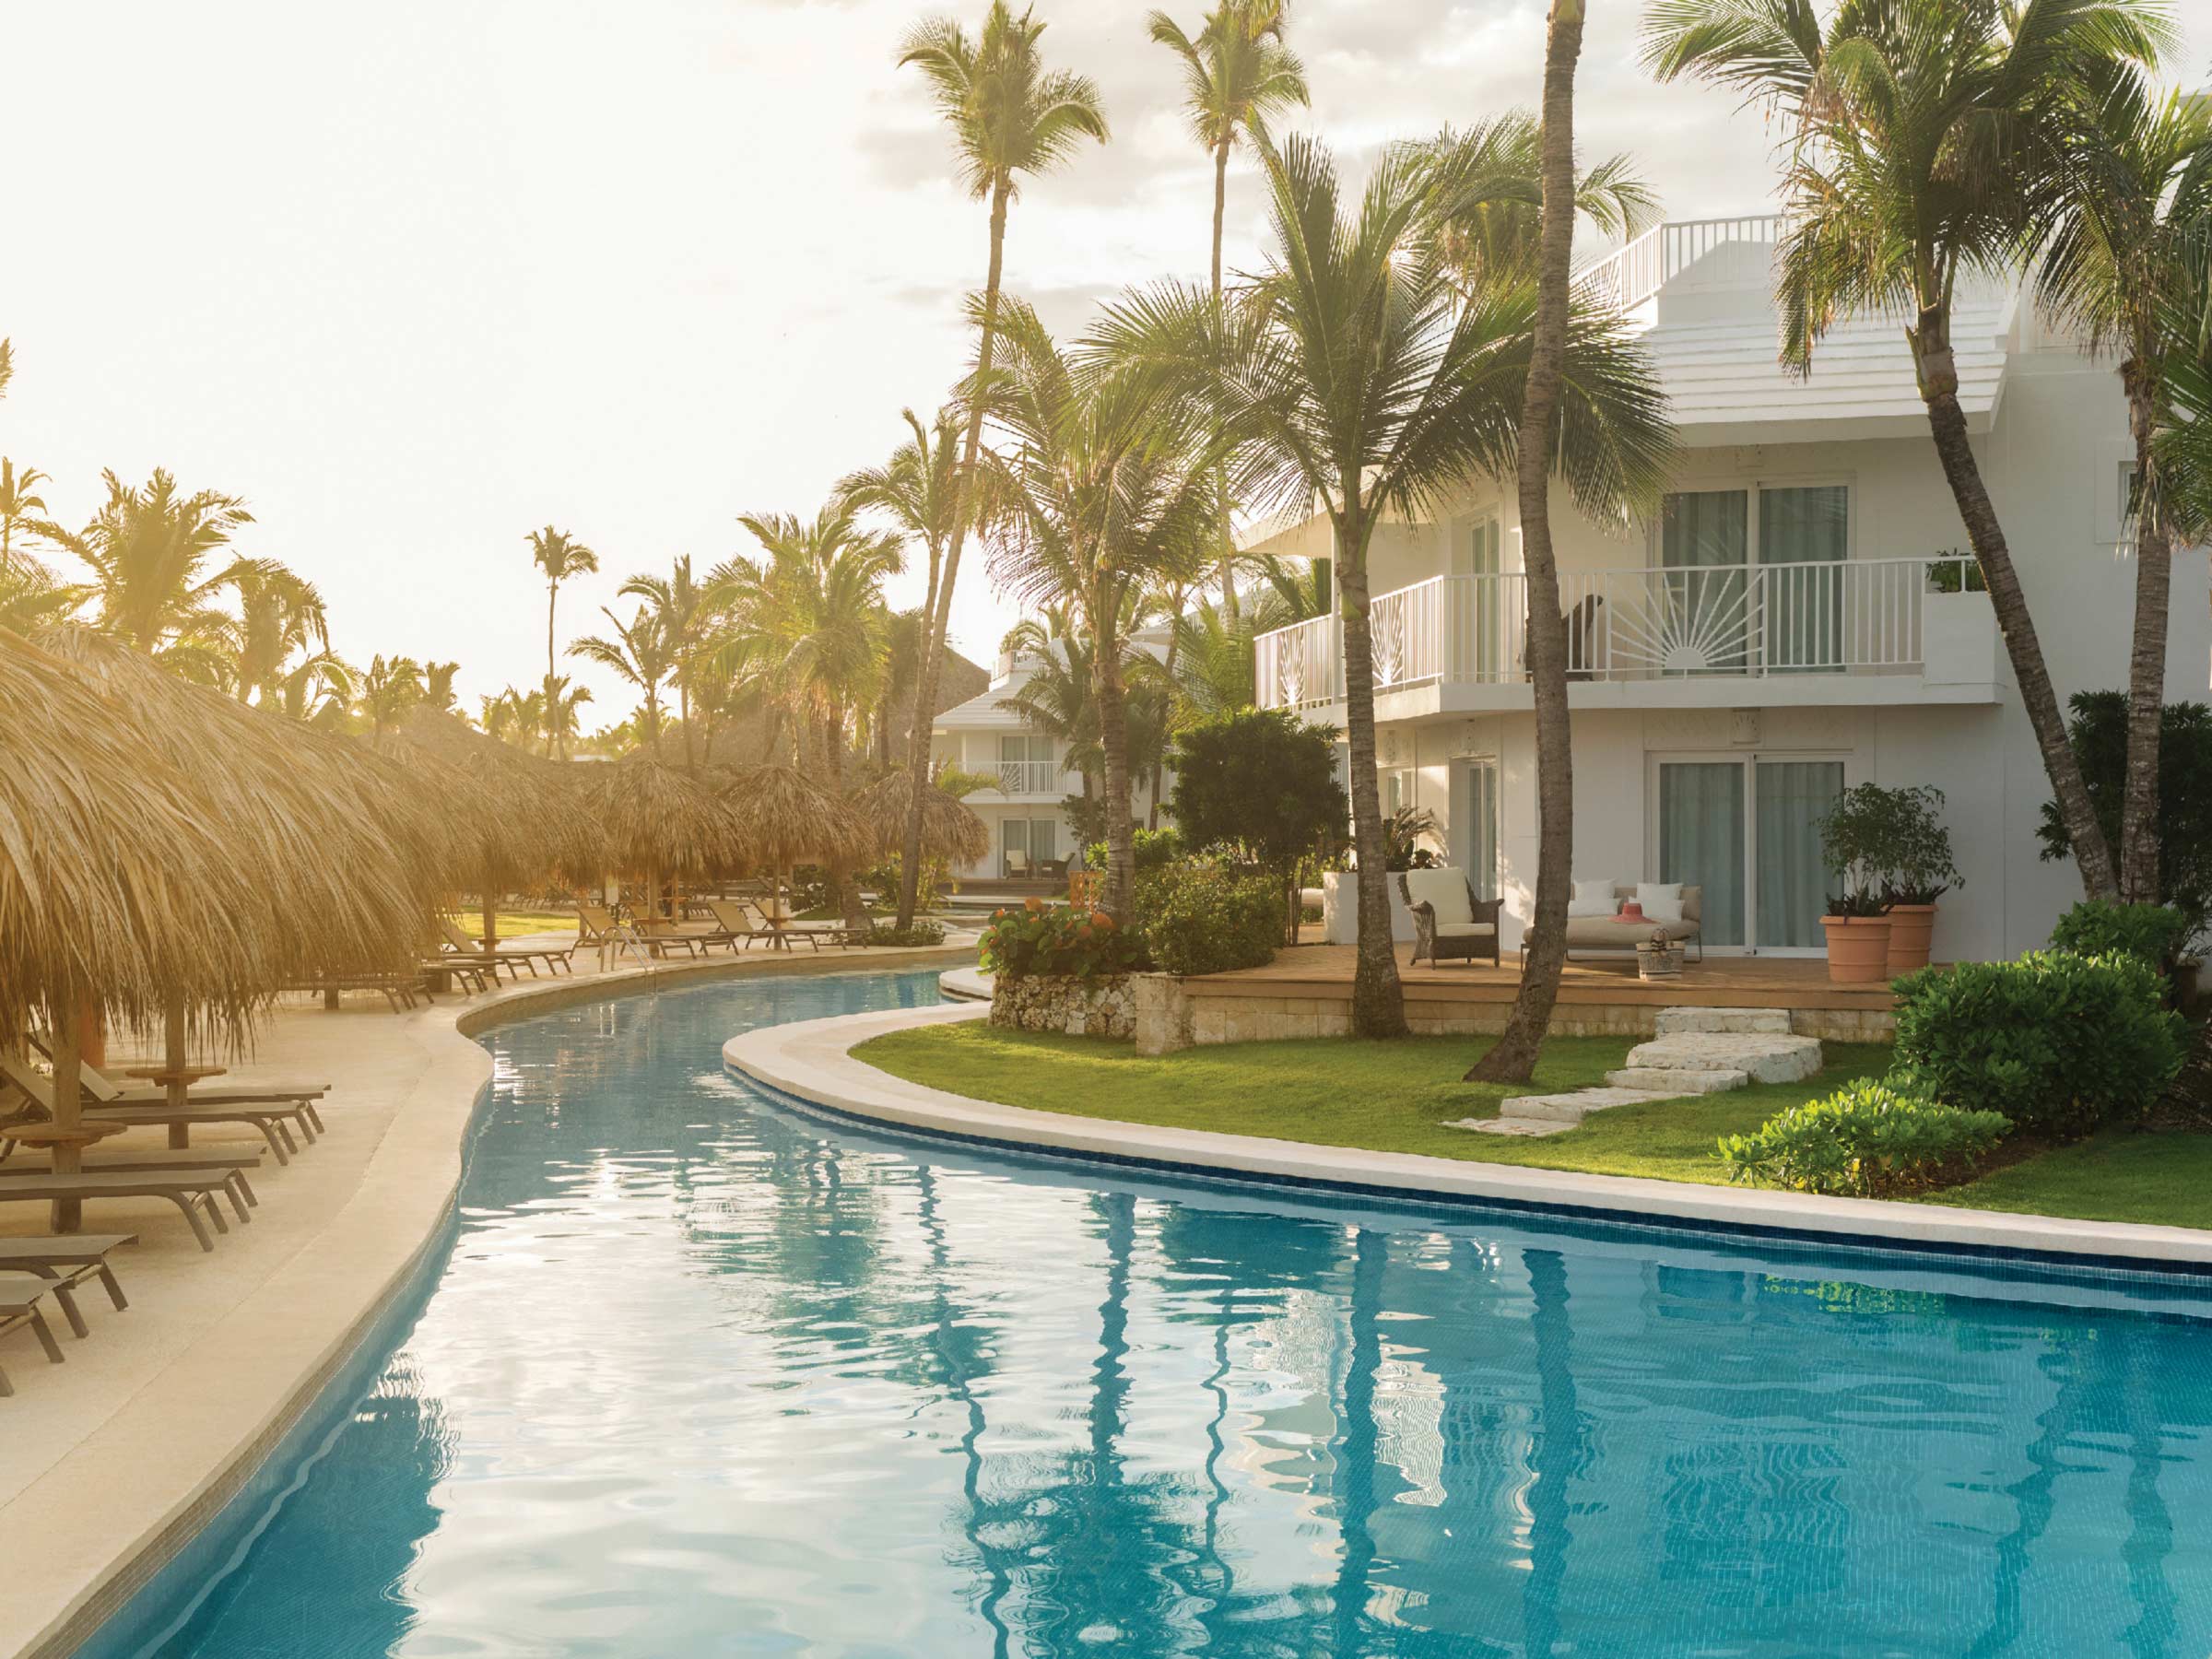 Obtenga Excelentes Ofertas en el Hotel Excellence Punta Cana con su Reserva Anticipada